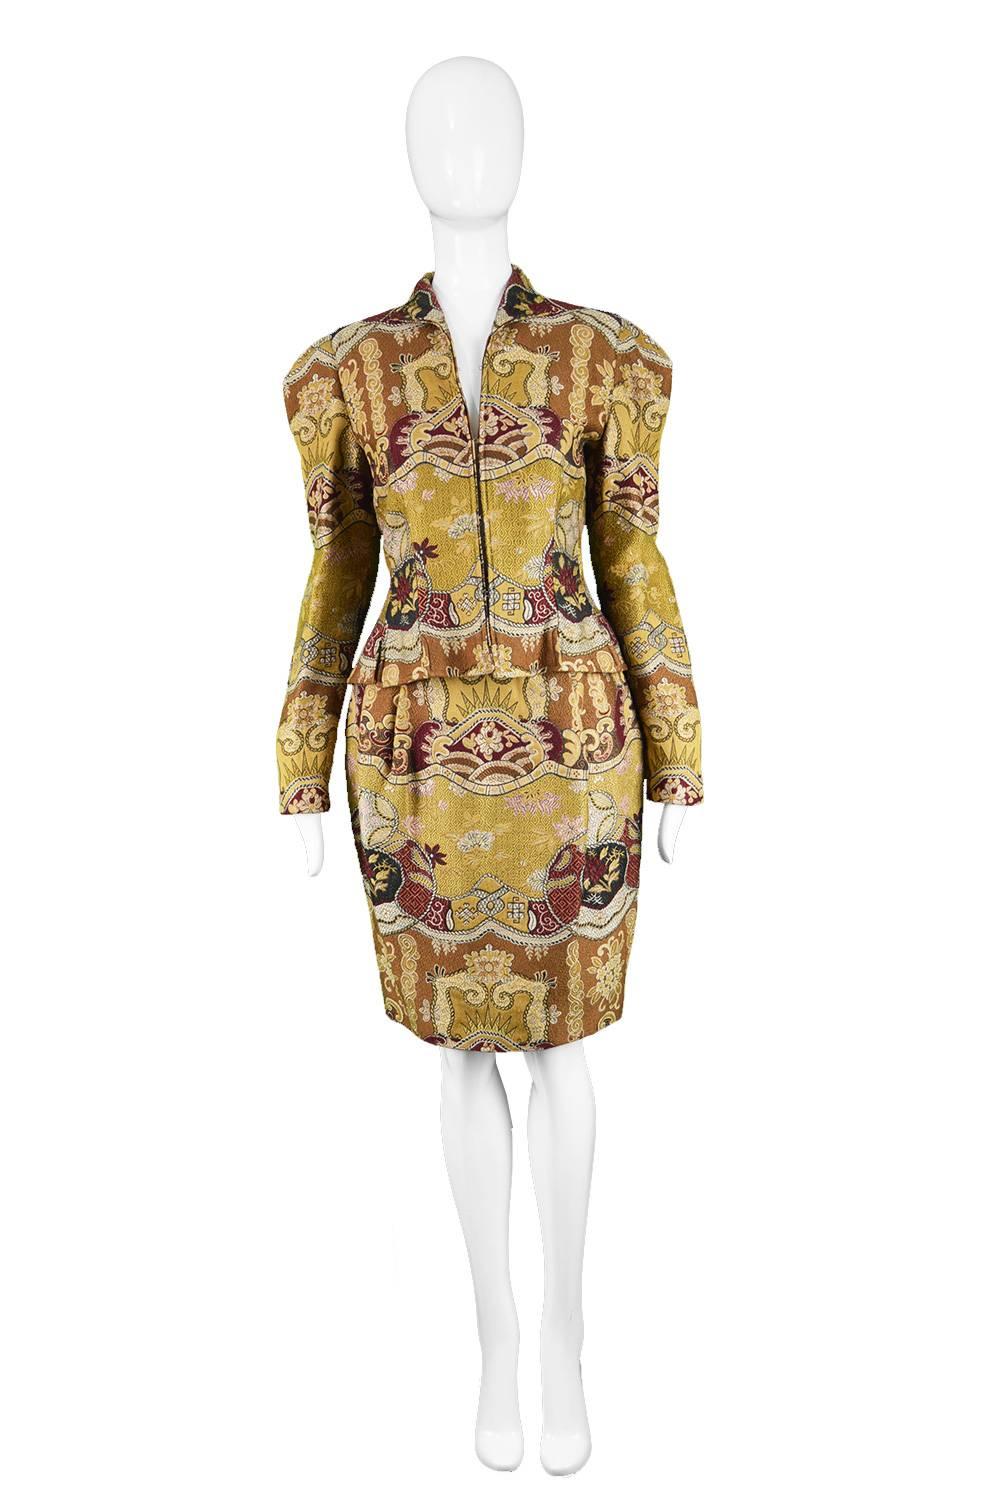 Christian Lacroix Vintage 1990s Asian Patterned Jacquard Brocade 2 Piece Suit

Estimated Size: UK 10/ US 6/ EU 38. Please check measurements. 
Jacket
Bust - 34” / 86cm
Waist - 28” / 71cm
Length (Shoulder to Hem) - 19” / 48cm
Shoulder to Shoulder -